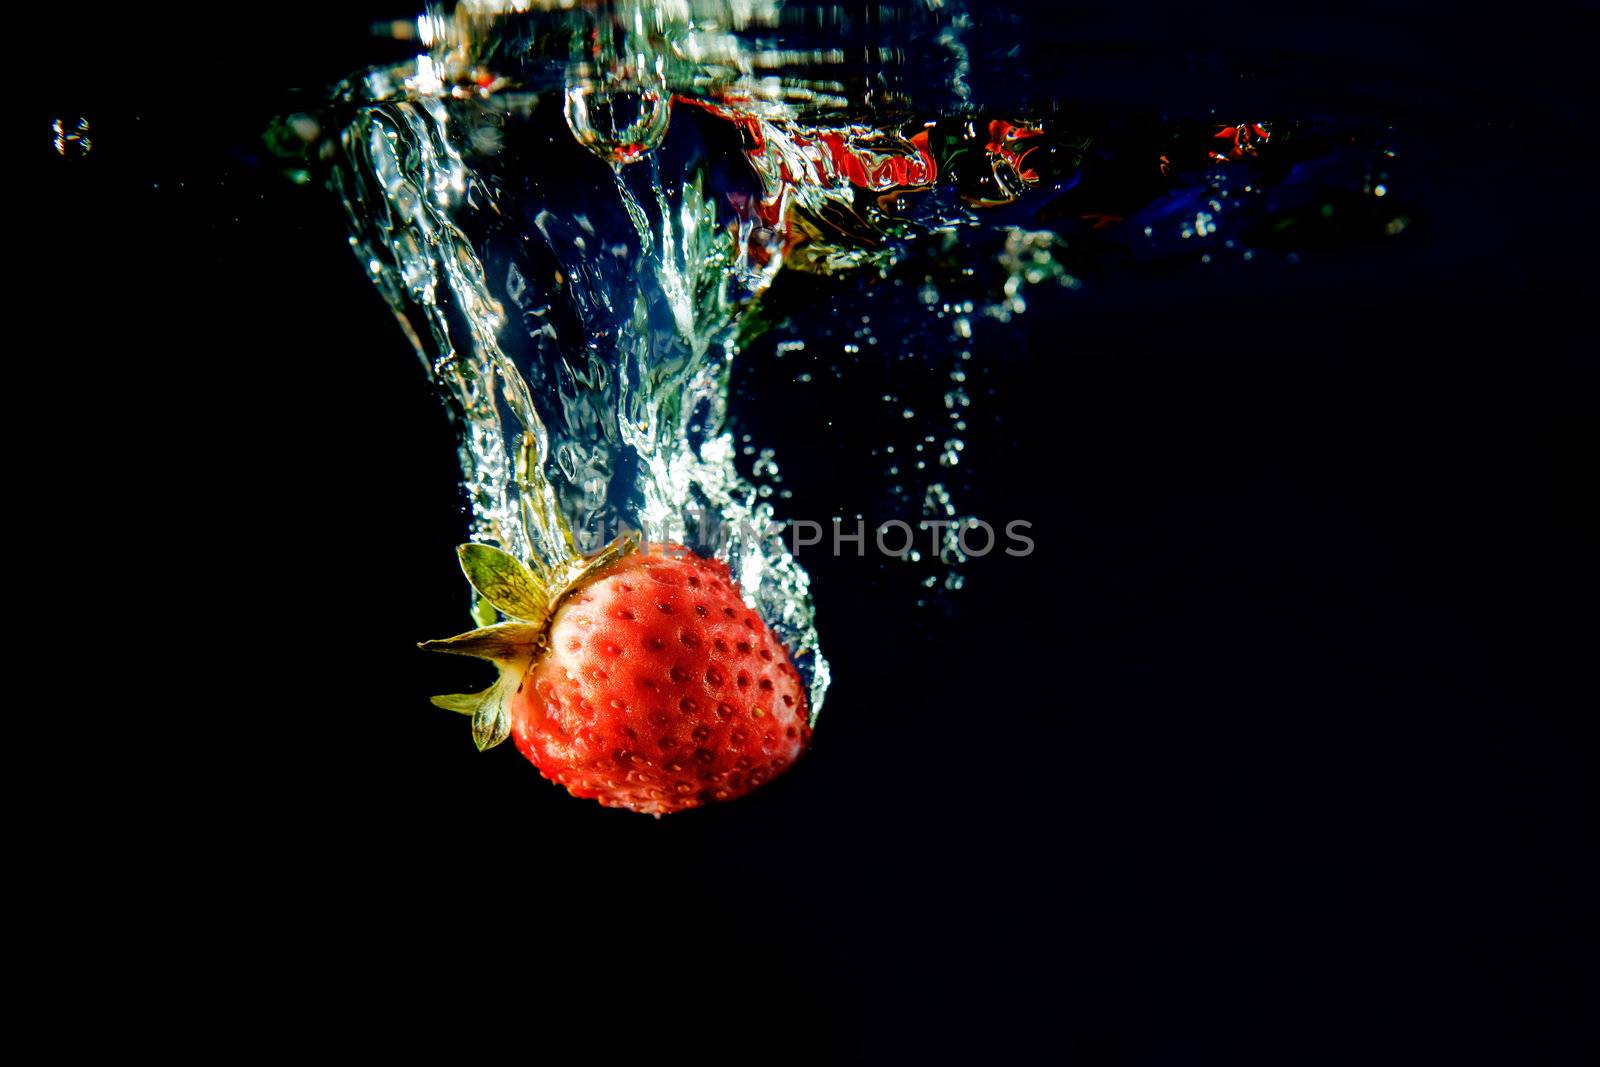 Strawberry Splash by leaf